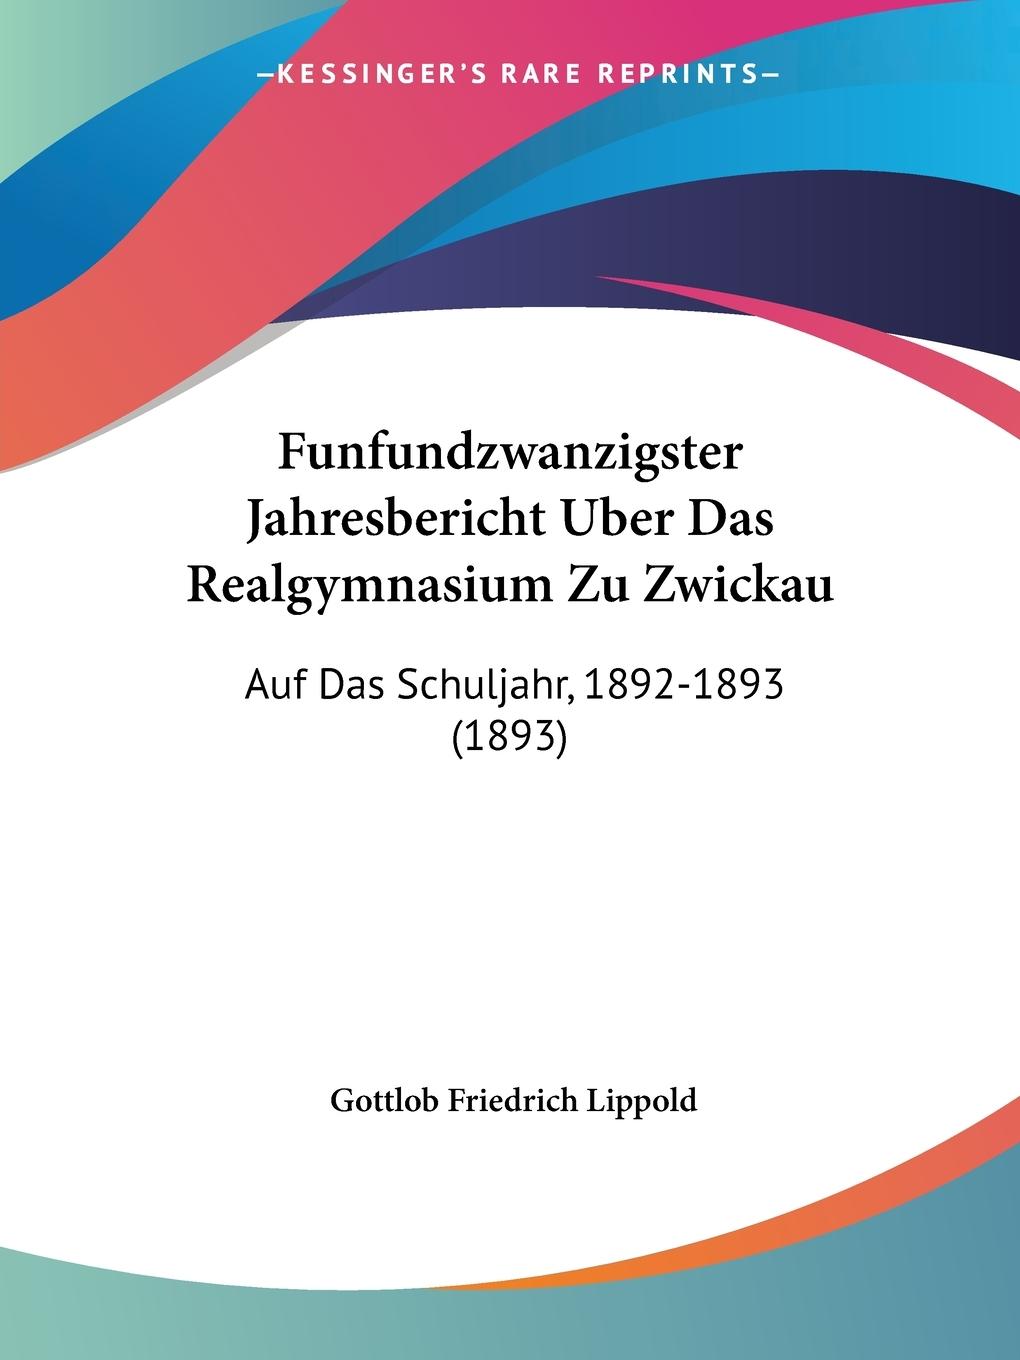 Funfundzwanzigster Jahresbericht Uber Das Realgymnasium Zu Zwickau - Lippold, Gottlob Friedrich